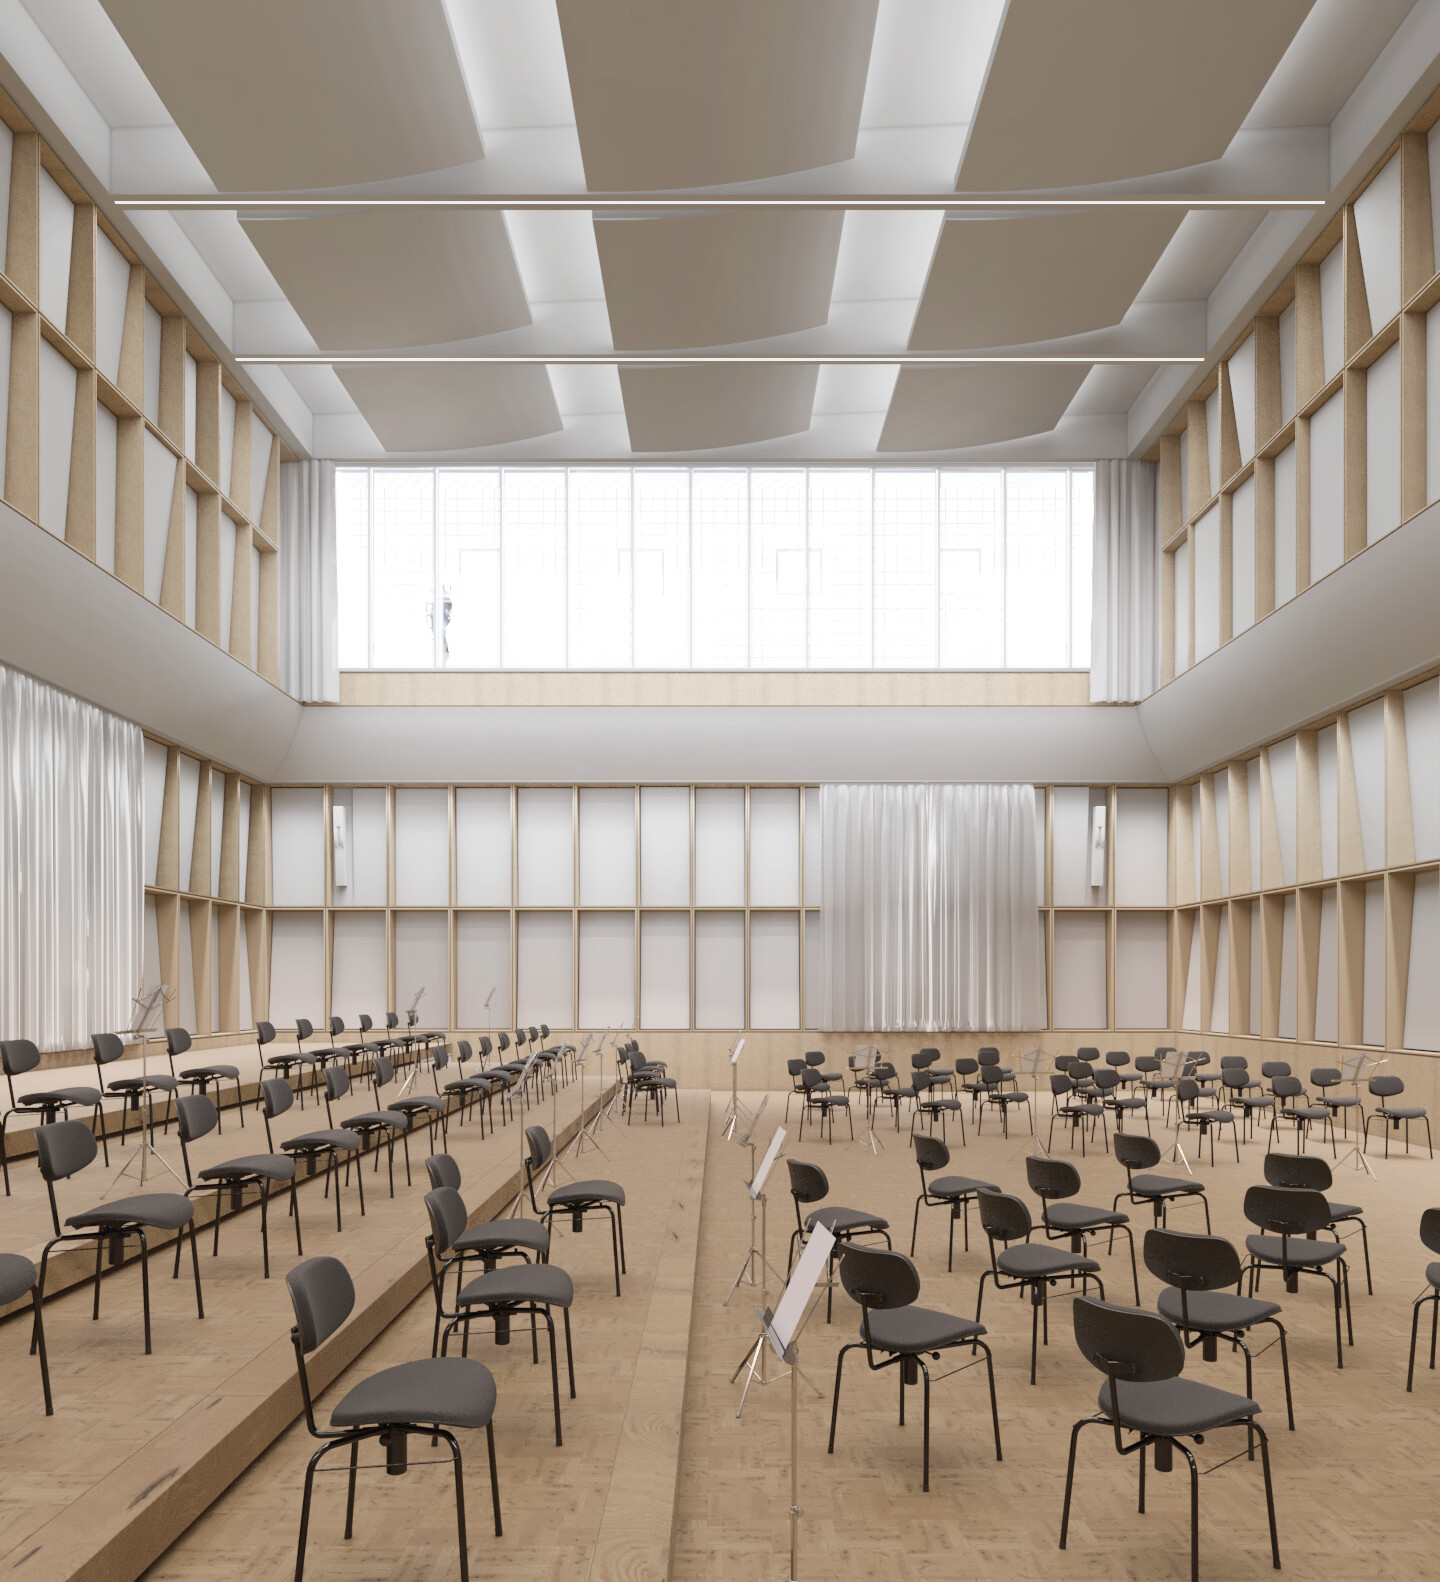 Visualisierung des Orchesterprobensaals. Ein heller großer Raum mit viel Holz